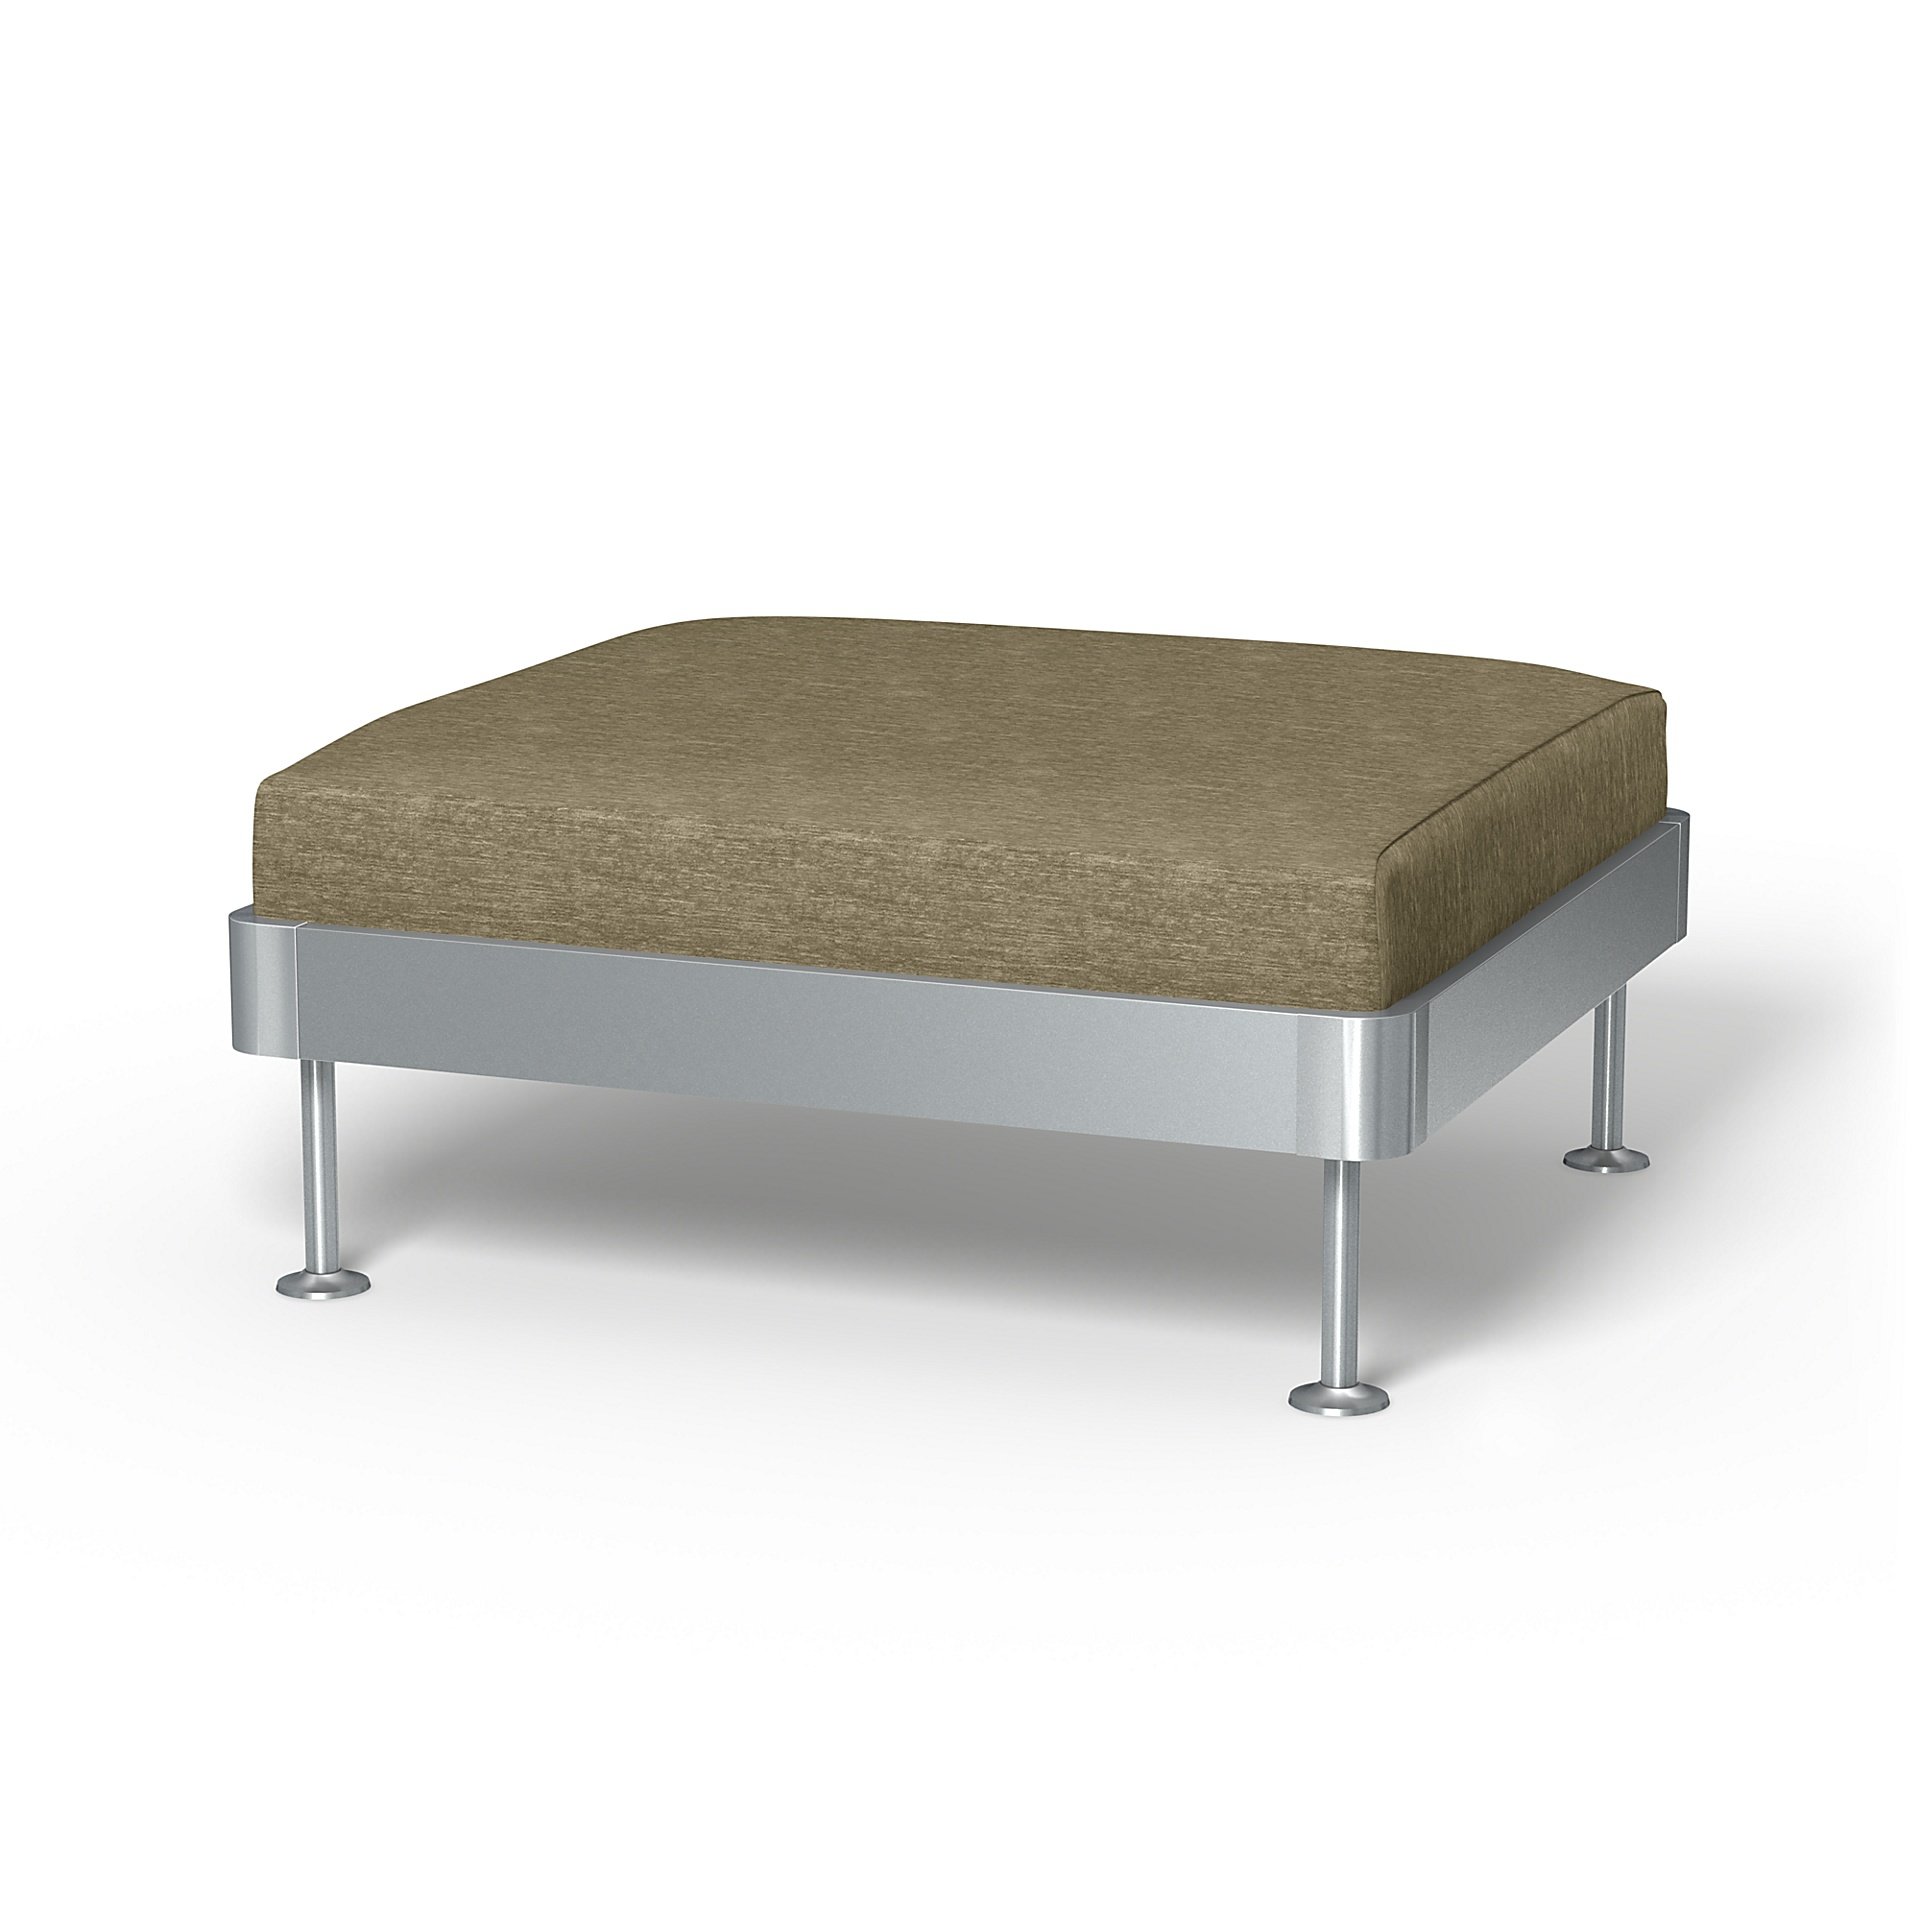 IKEA - Delaktig 1 Seat Platform Cover, Beige, Velvet - Bemz